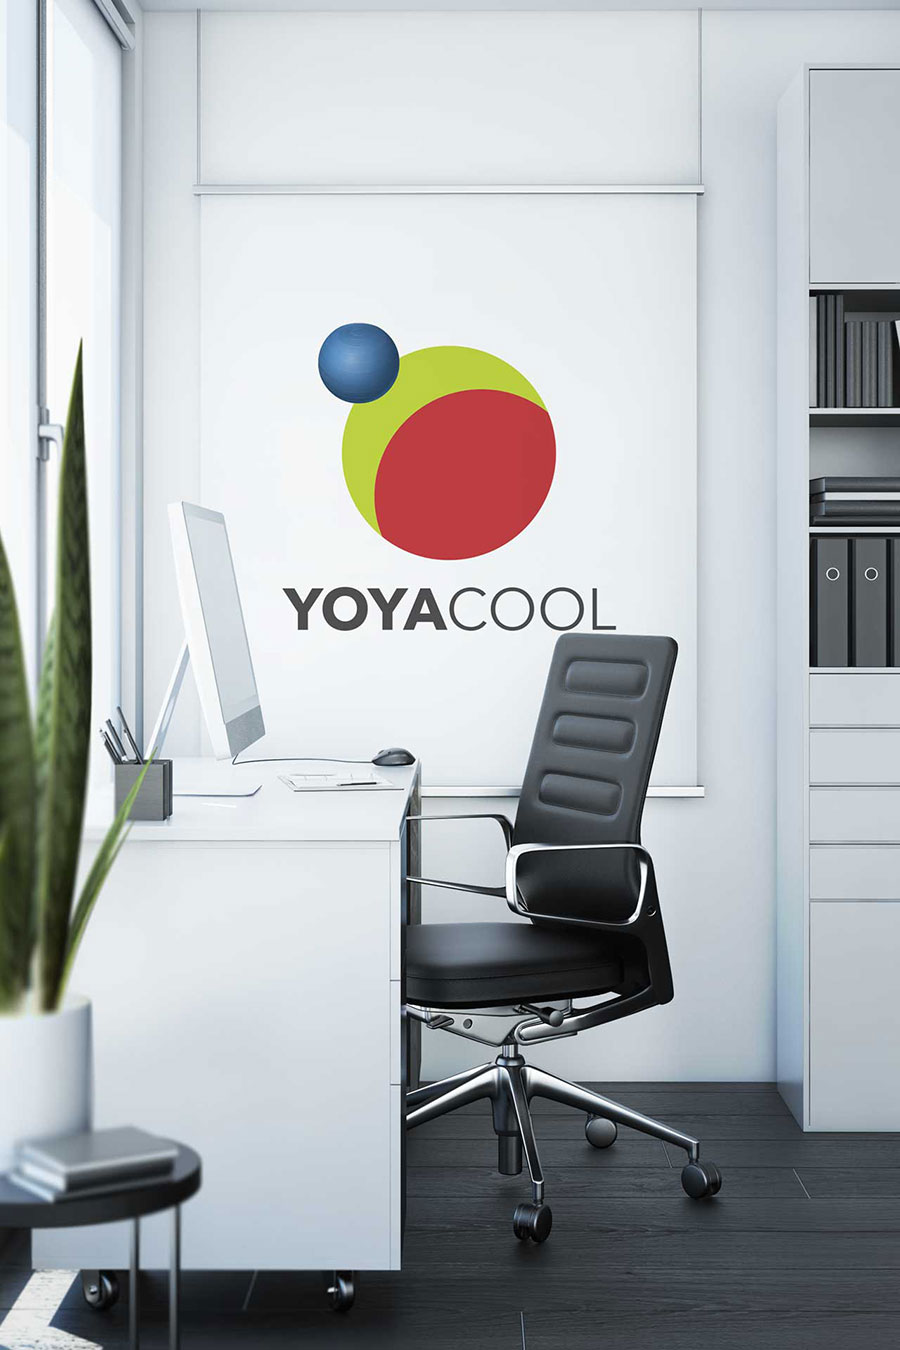 Vancouver Island eCommerce - YOYACOOL